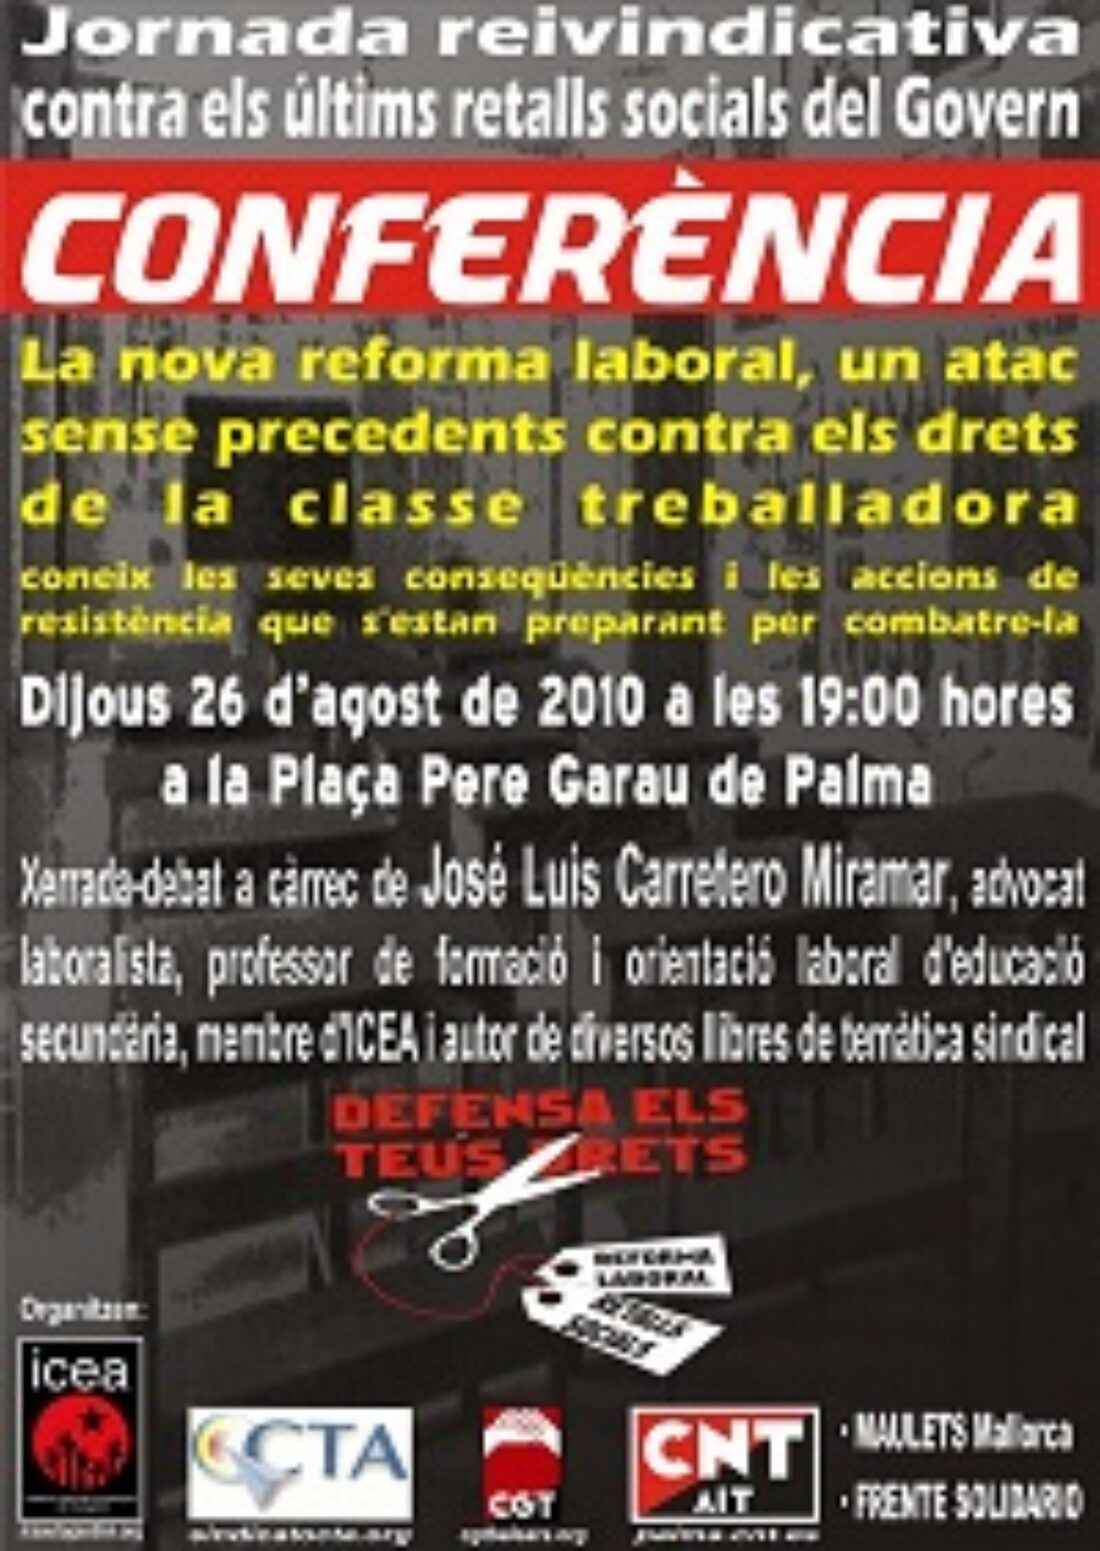 26 agosto, Palma de Mallorca : Jornada reivindicativa y Conferencia sobre la reforma laboral